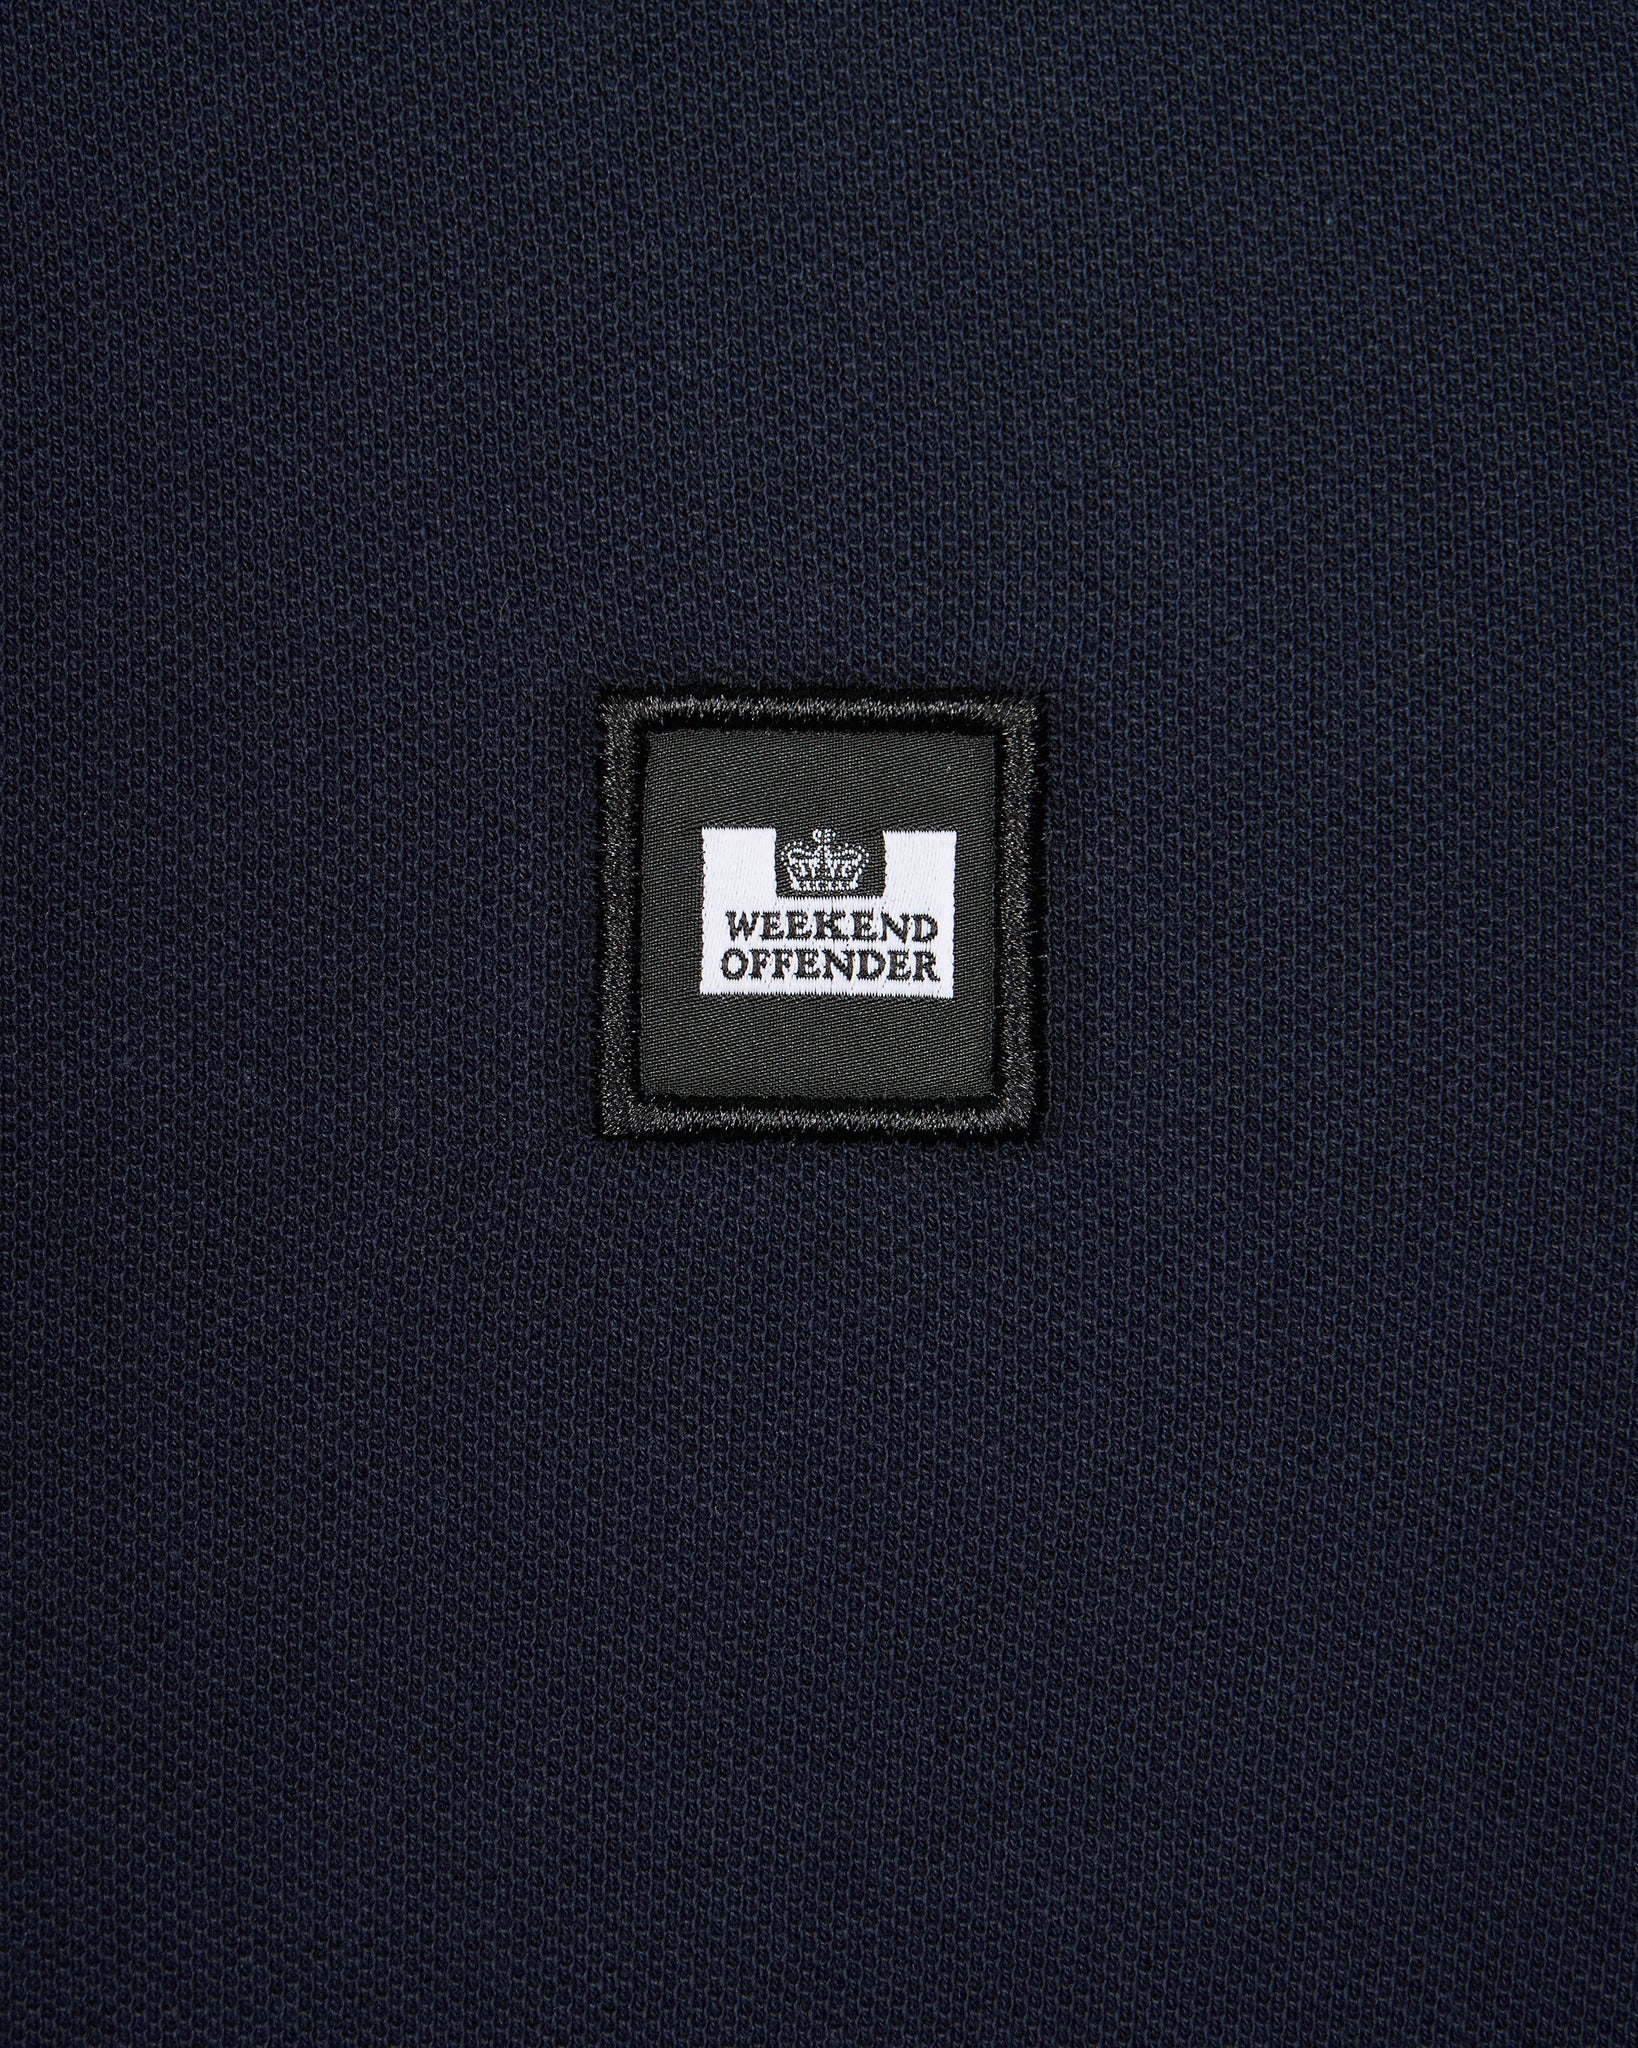 Sakai Polo Shirt Navy/Blue House Check